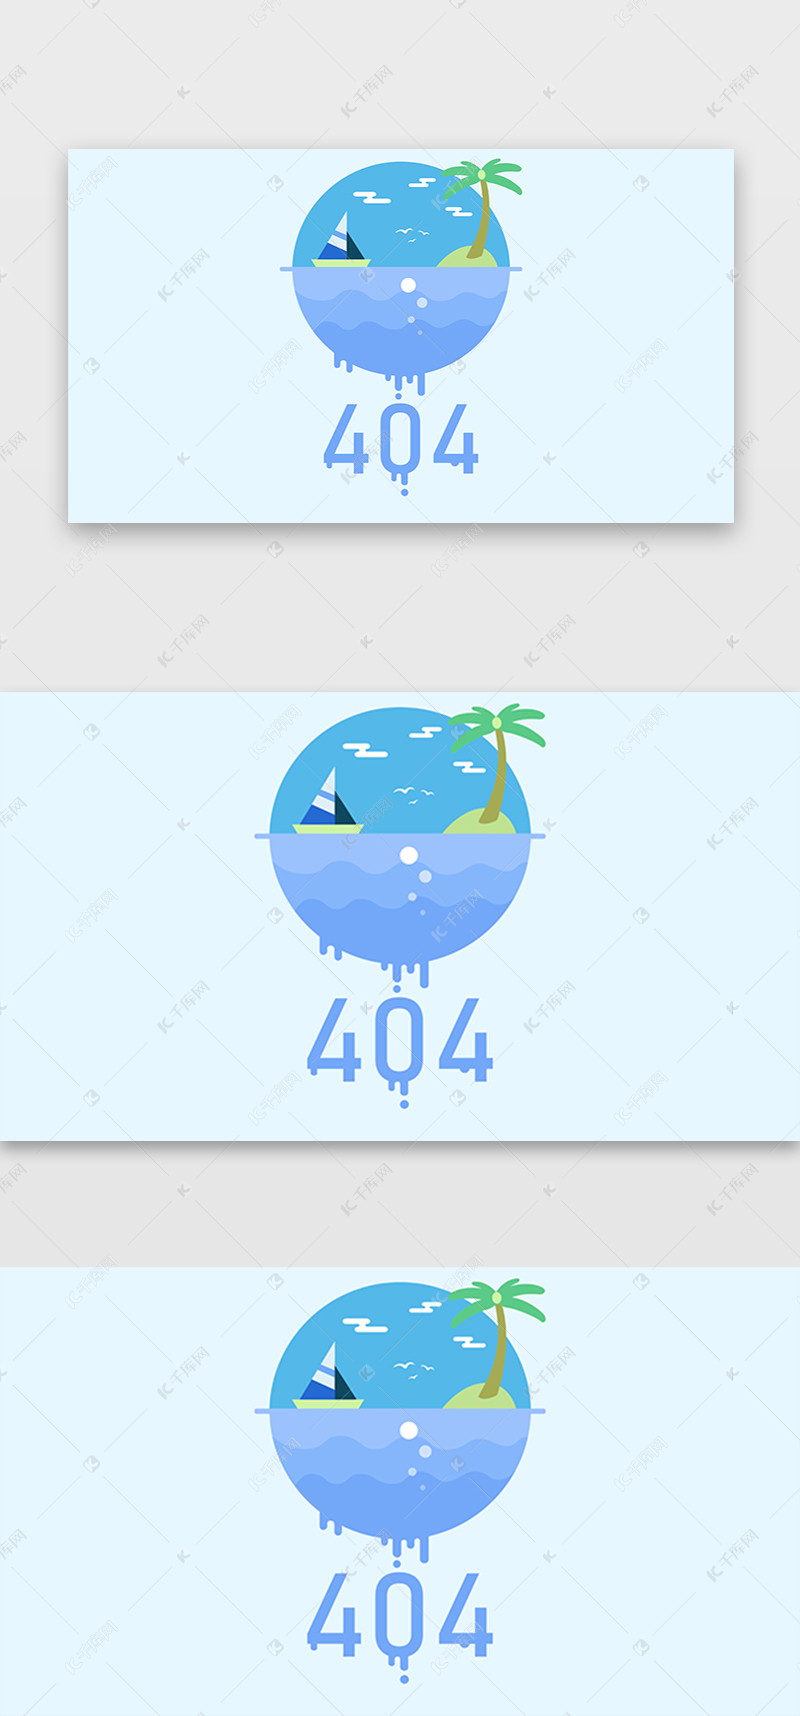 千库原创蓝色系卡通手绘创意海岛404网页